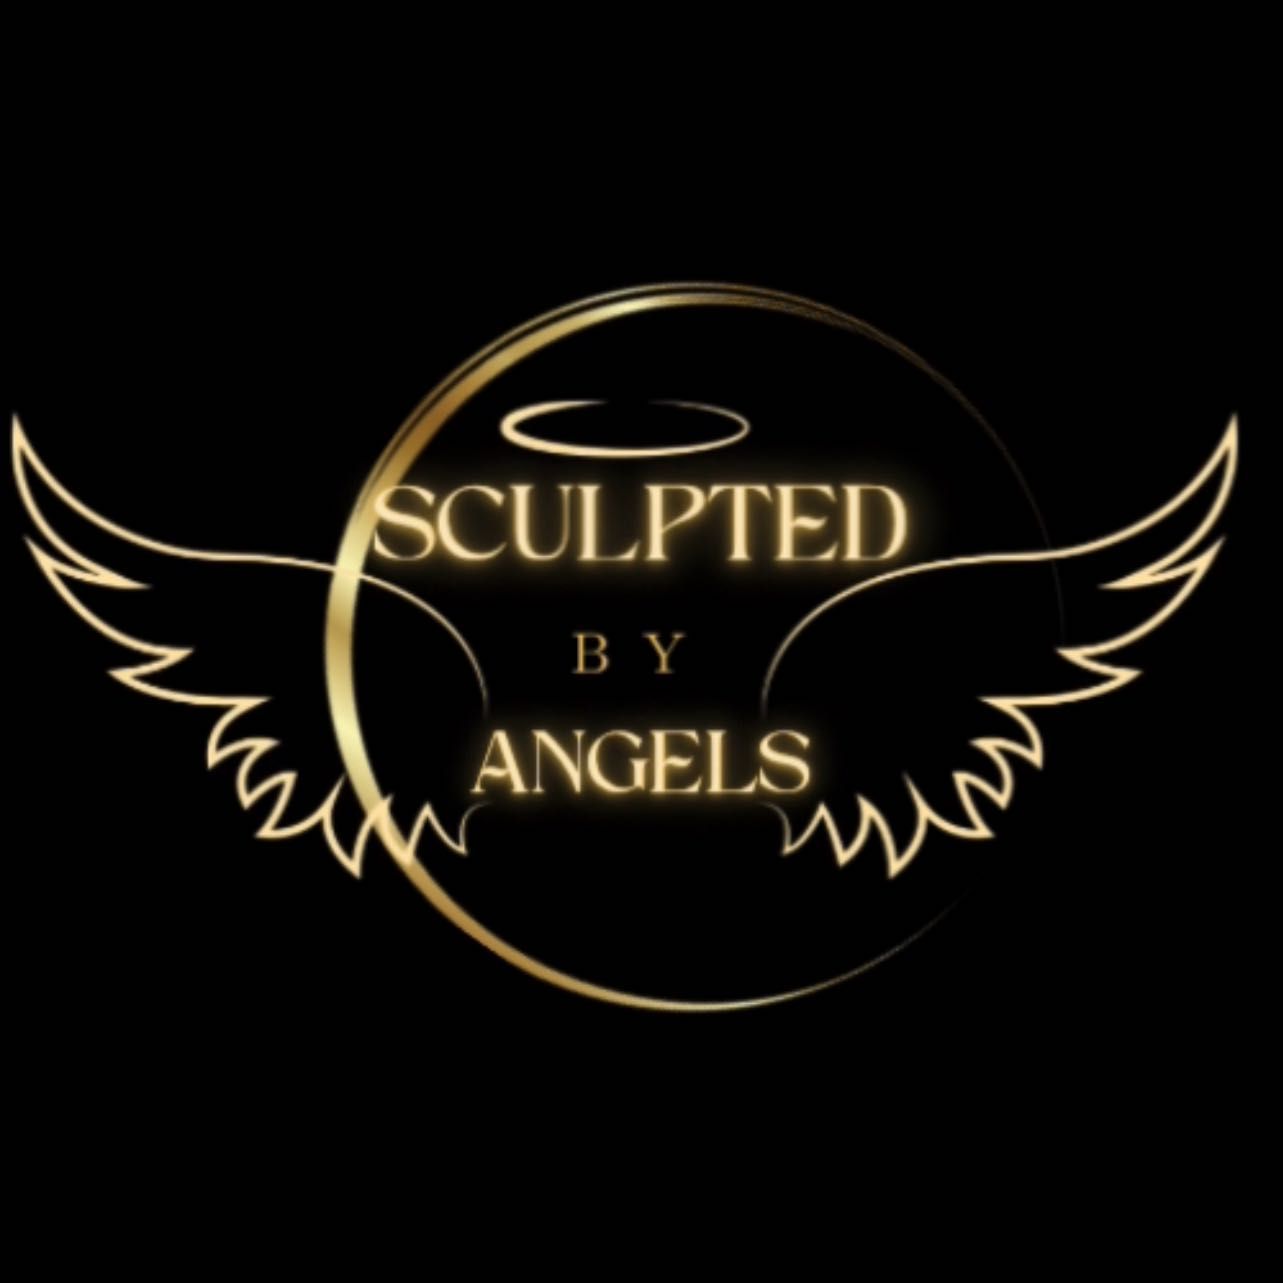 Sculpted by Angels, 4505 Ashford Dunwoody rd, Suite #129, Atlanta, 30346